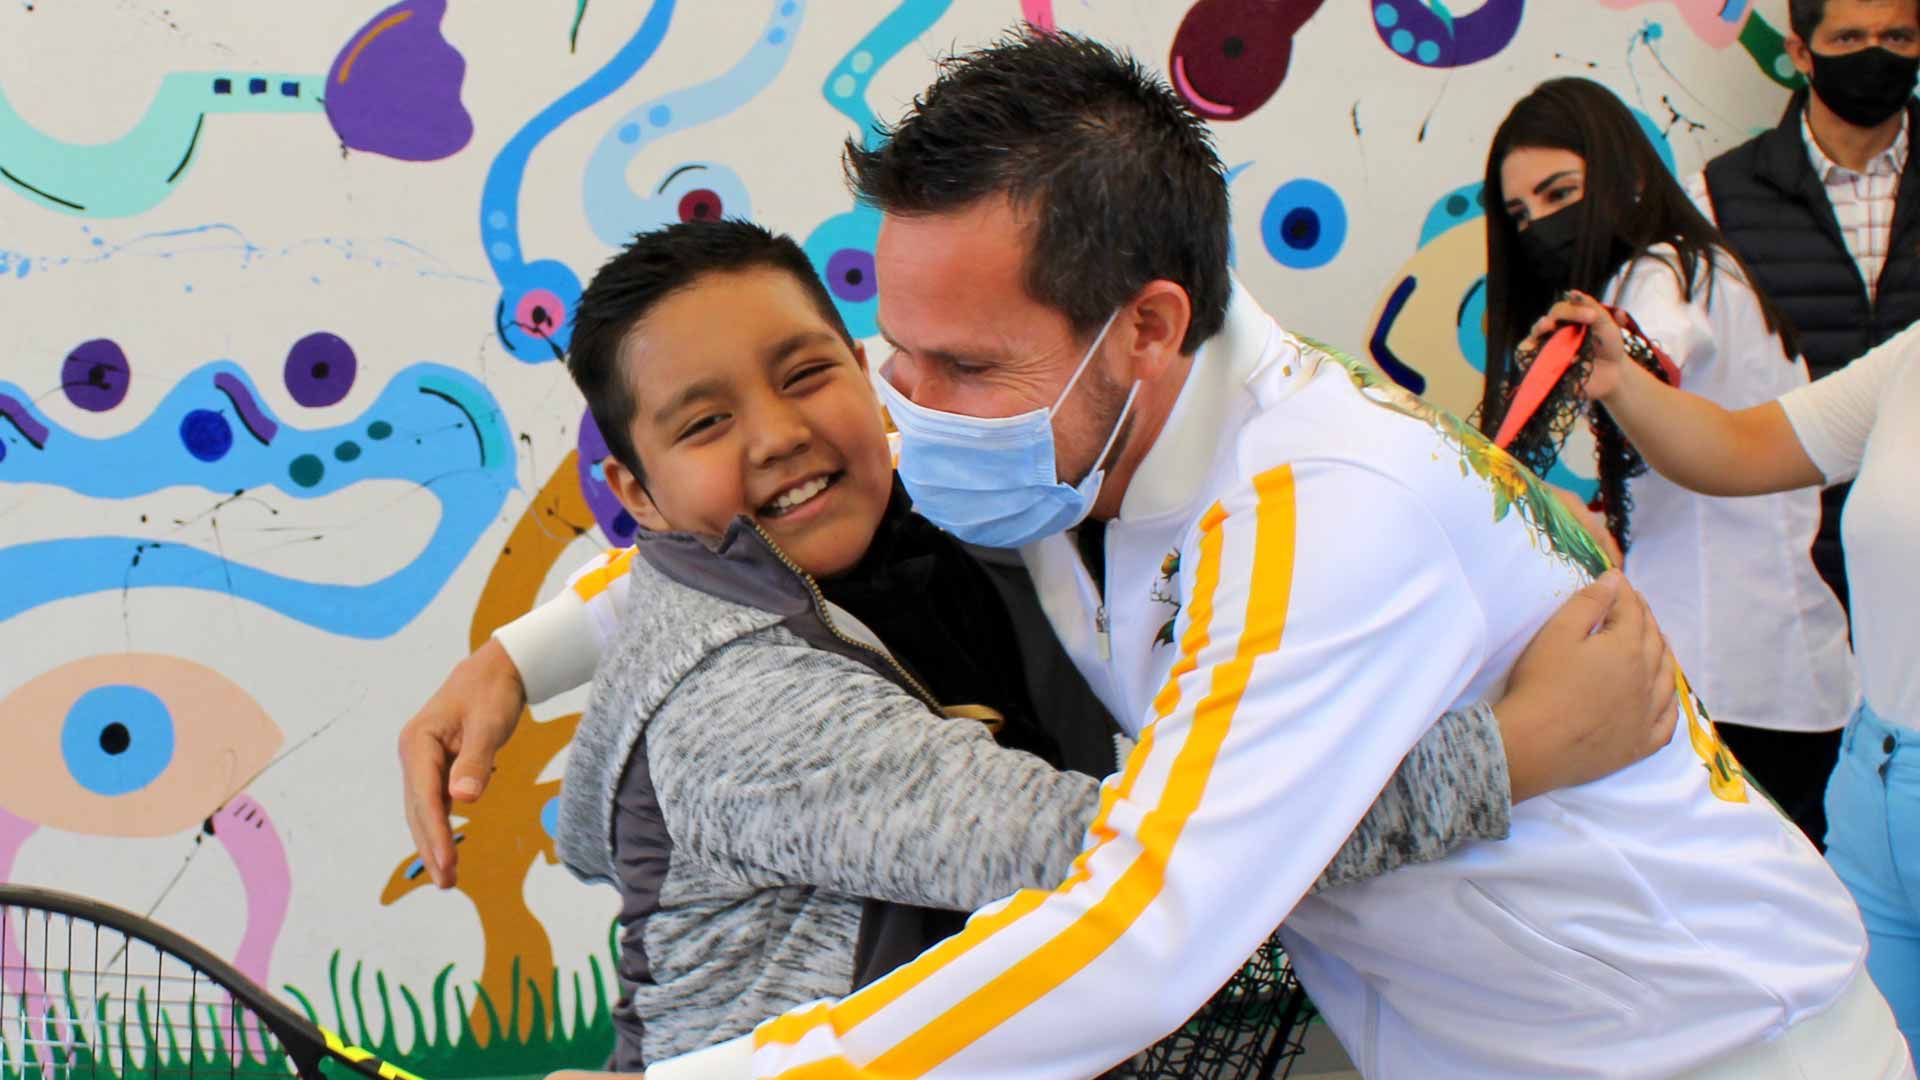 Miguel Ángel Reyes Varela se abraza con un niño durante los actos solidarios en Ciudad de México.